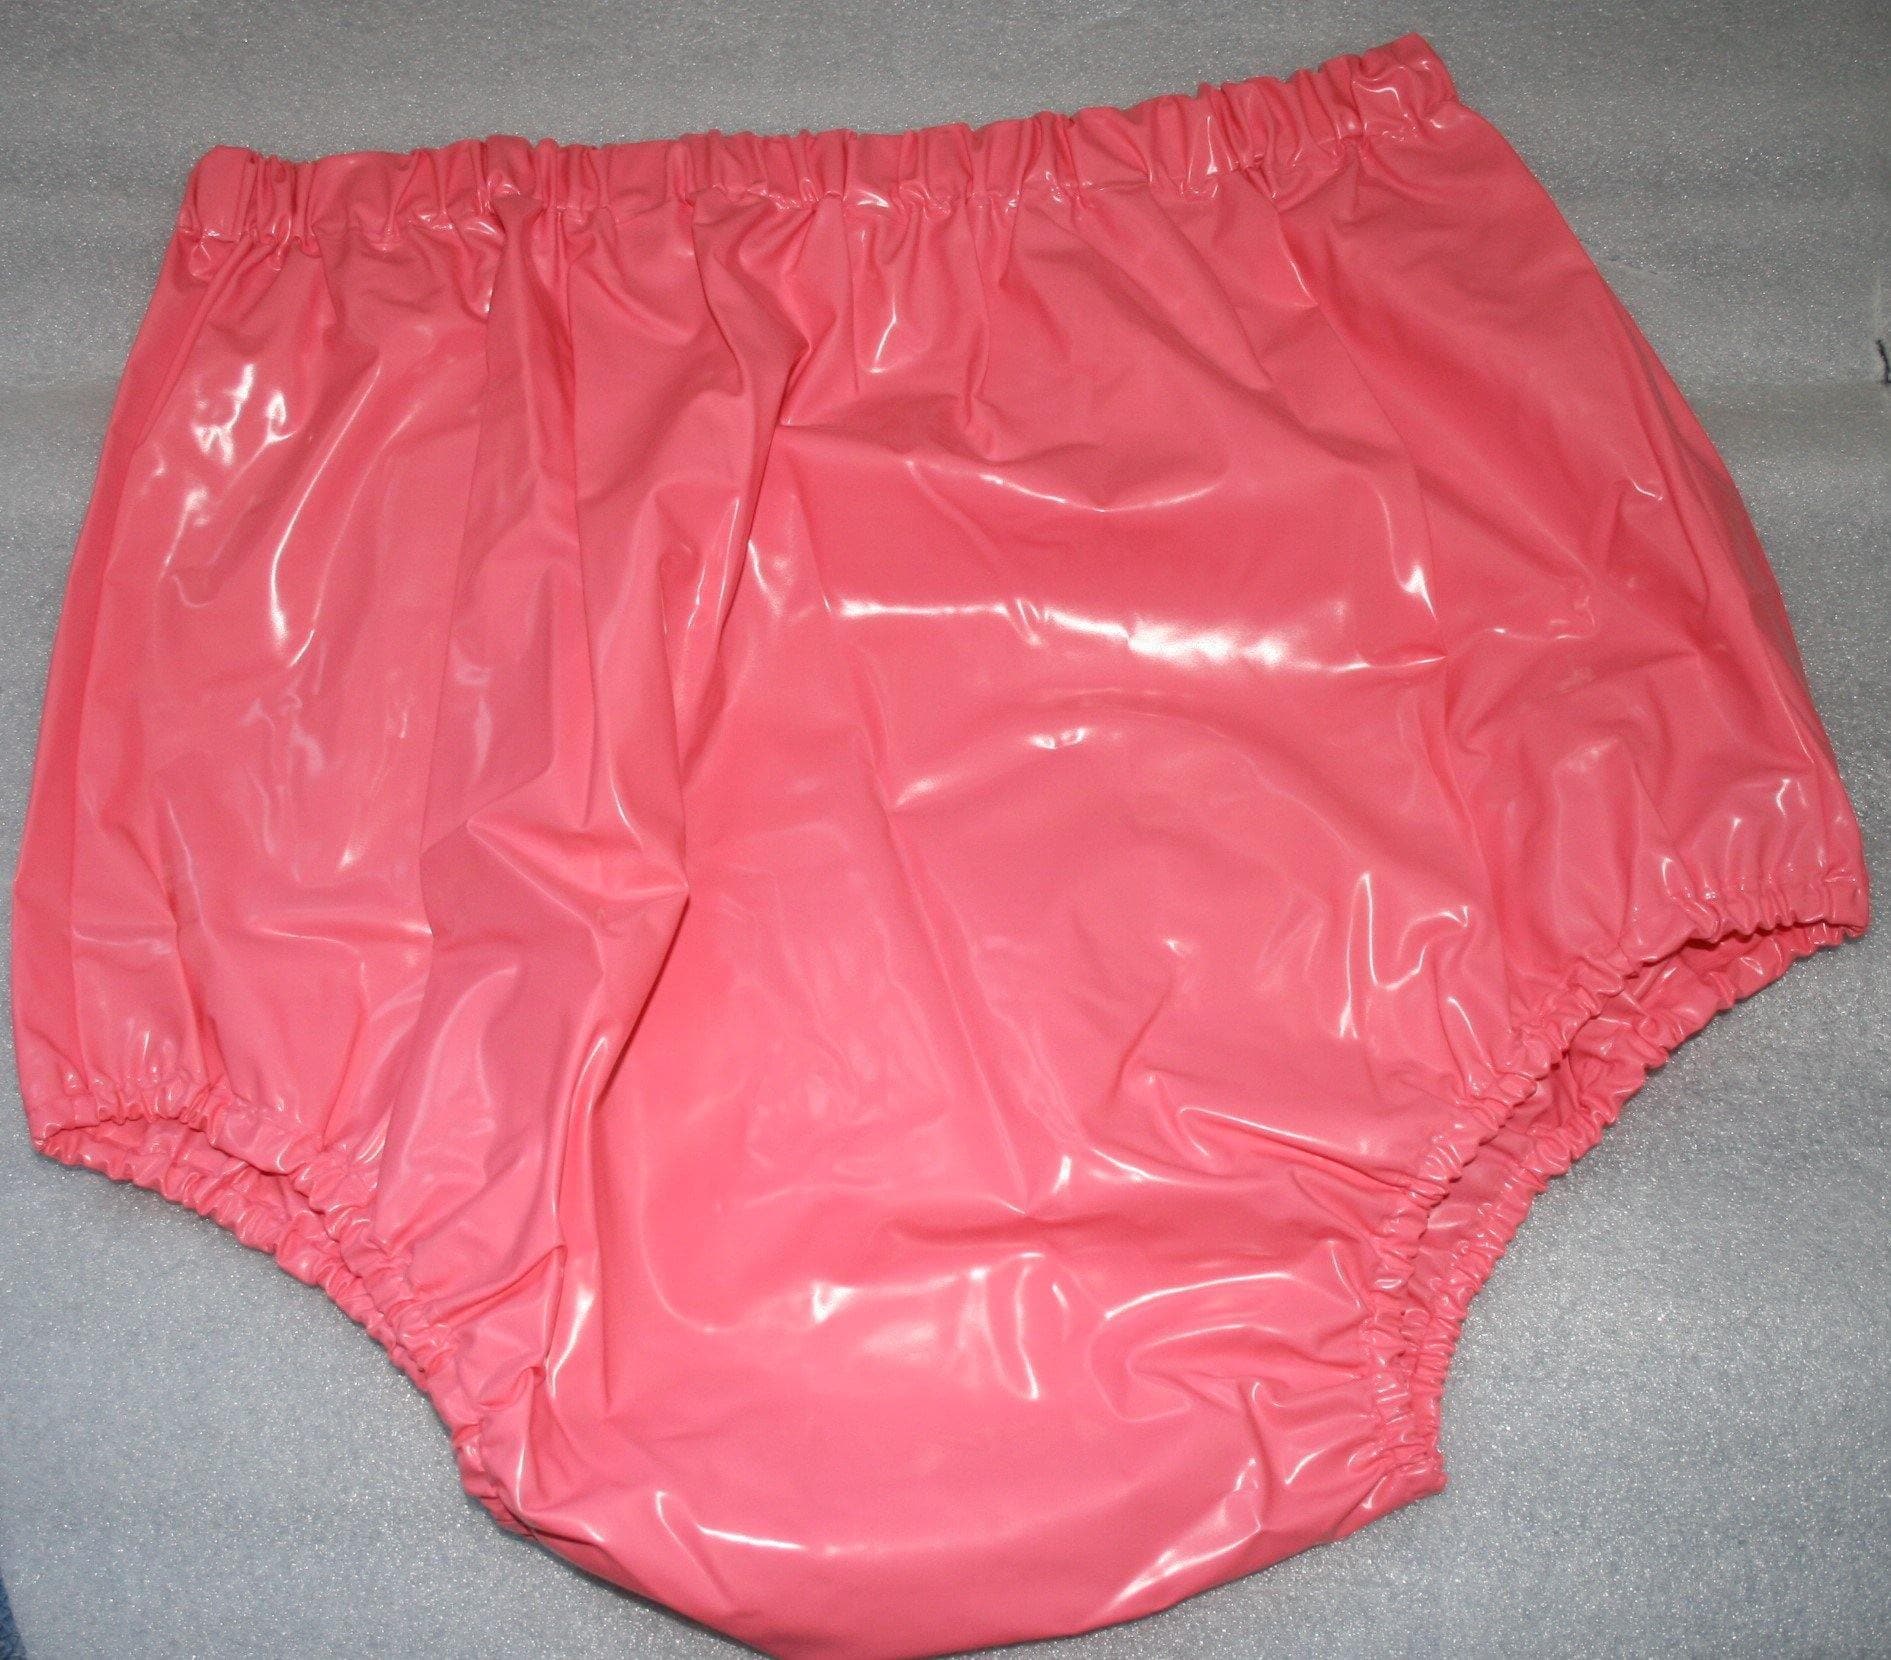 Hoch geschnittene PVC Windelhose Gummihose rosa Kindermotiv - auf Lager, Plastikwäsche zum Verlieben